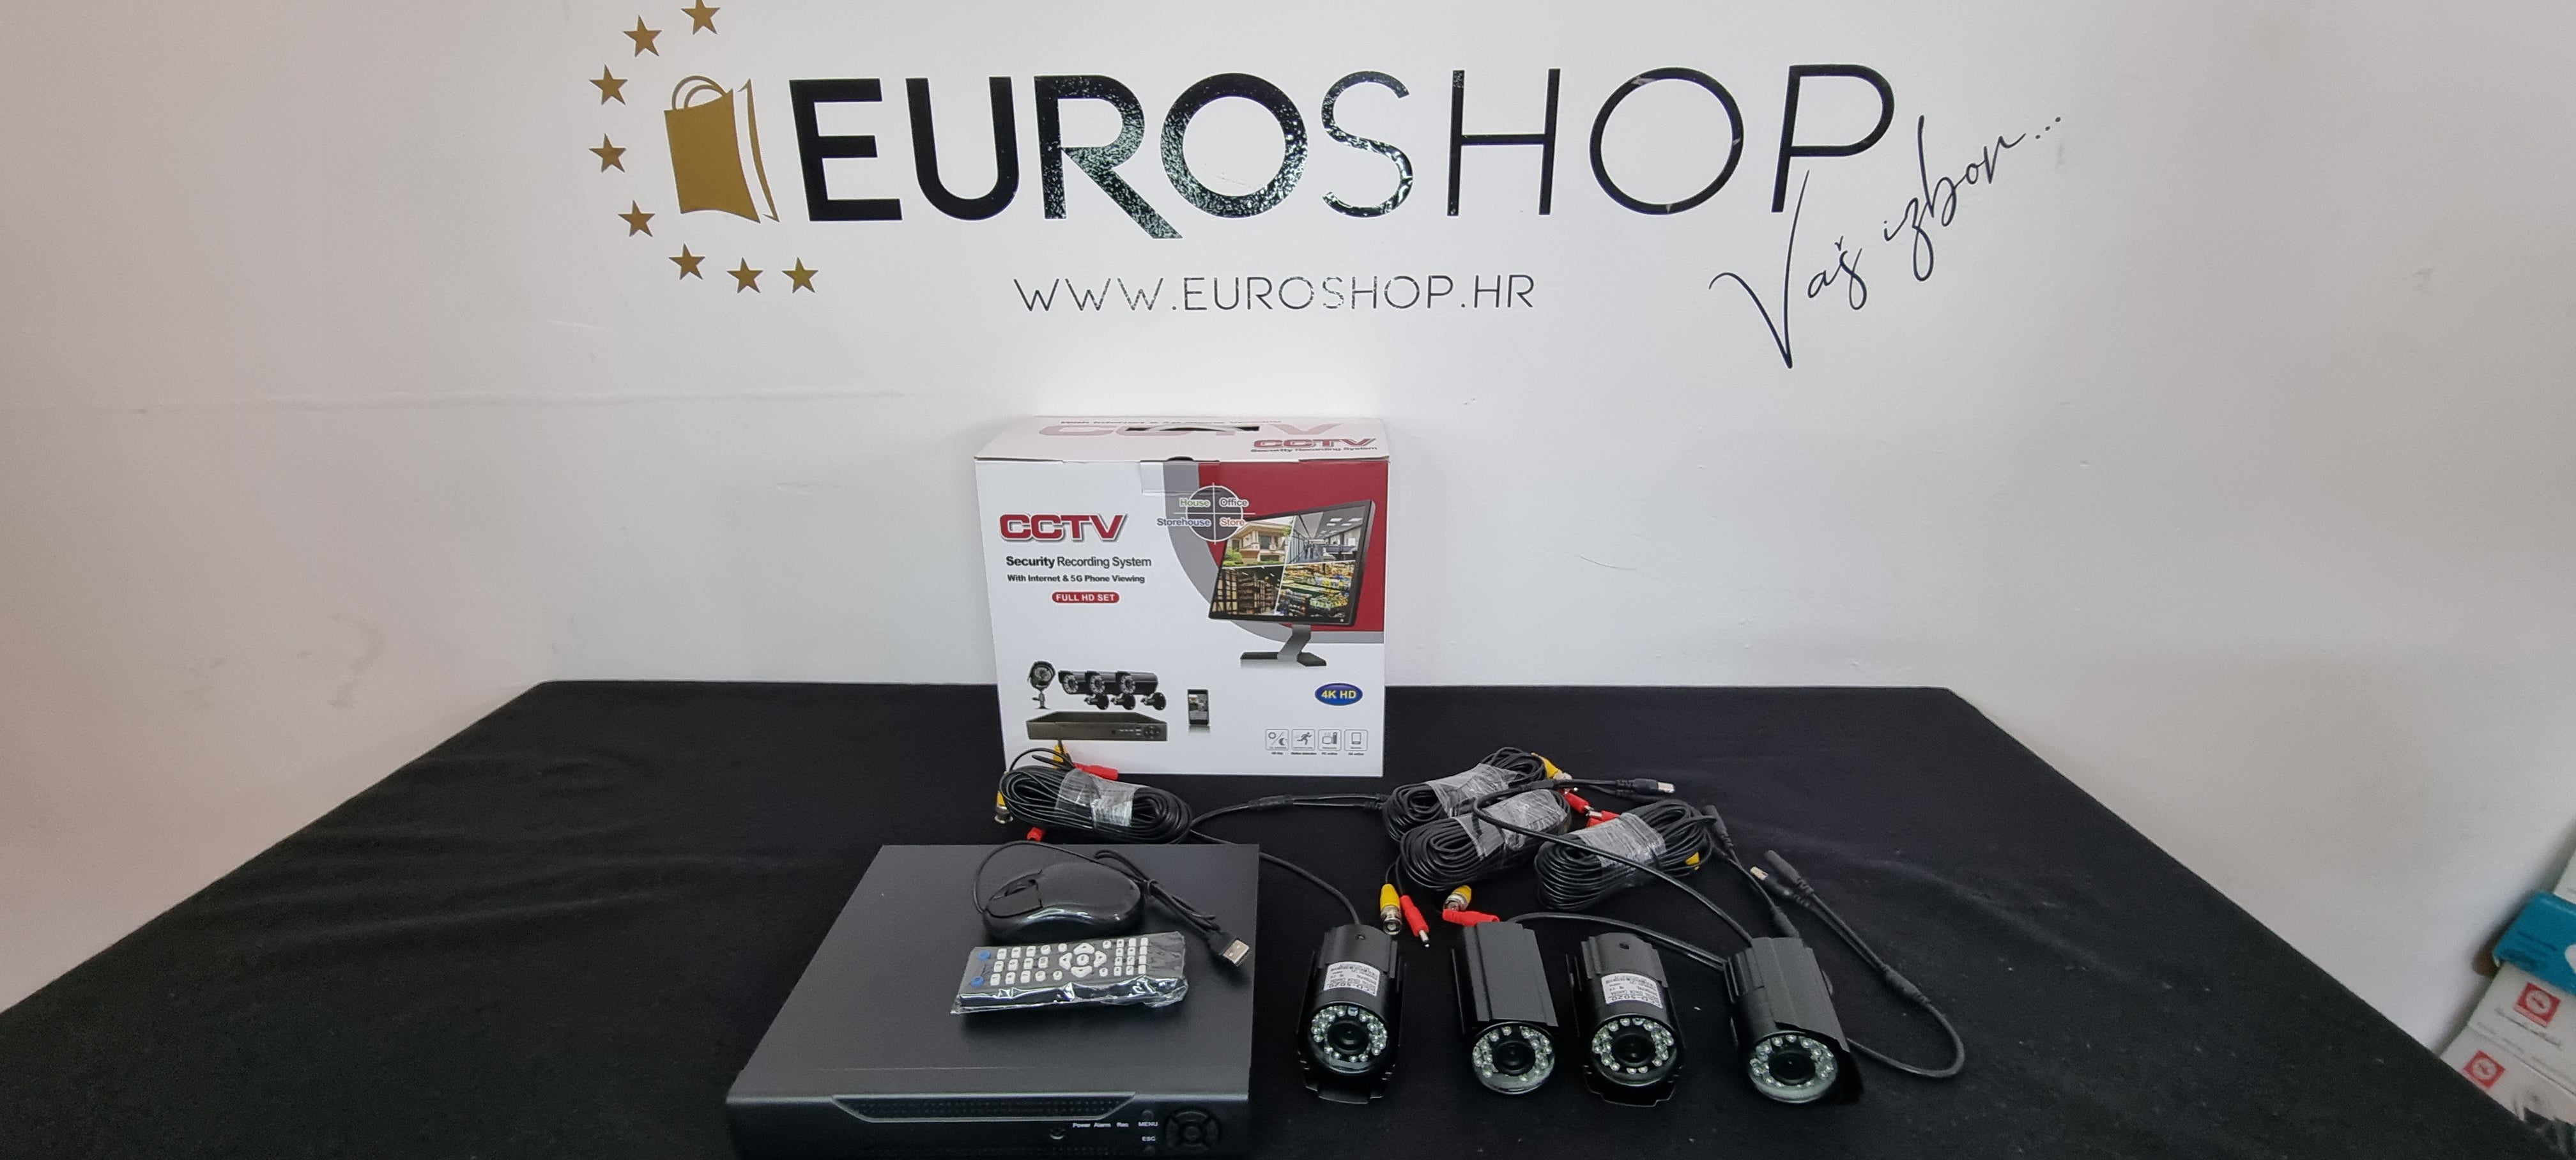 Digitalni videonadzor sa noćnim snimanjem - EuroShop